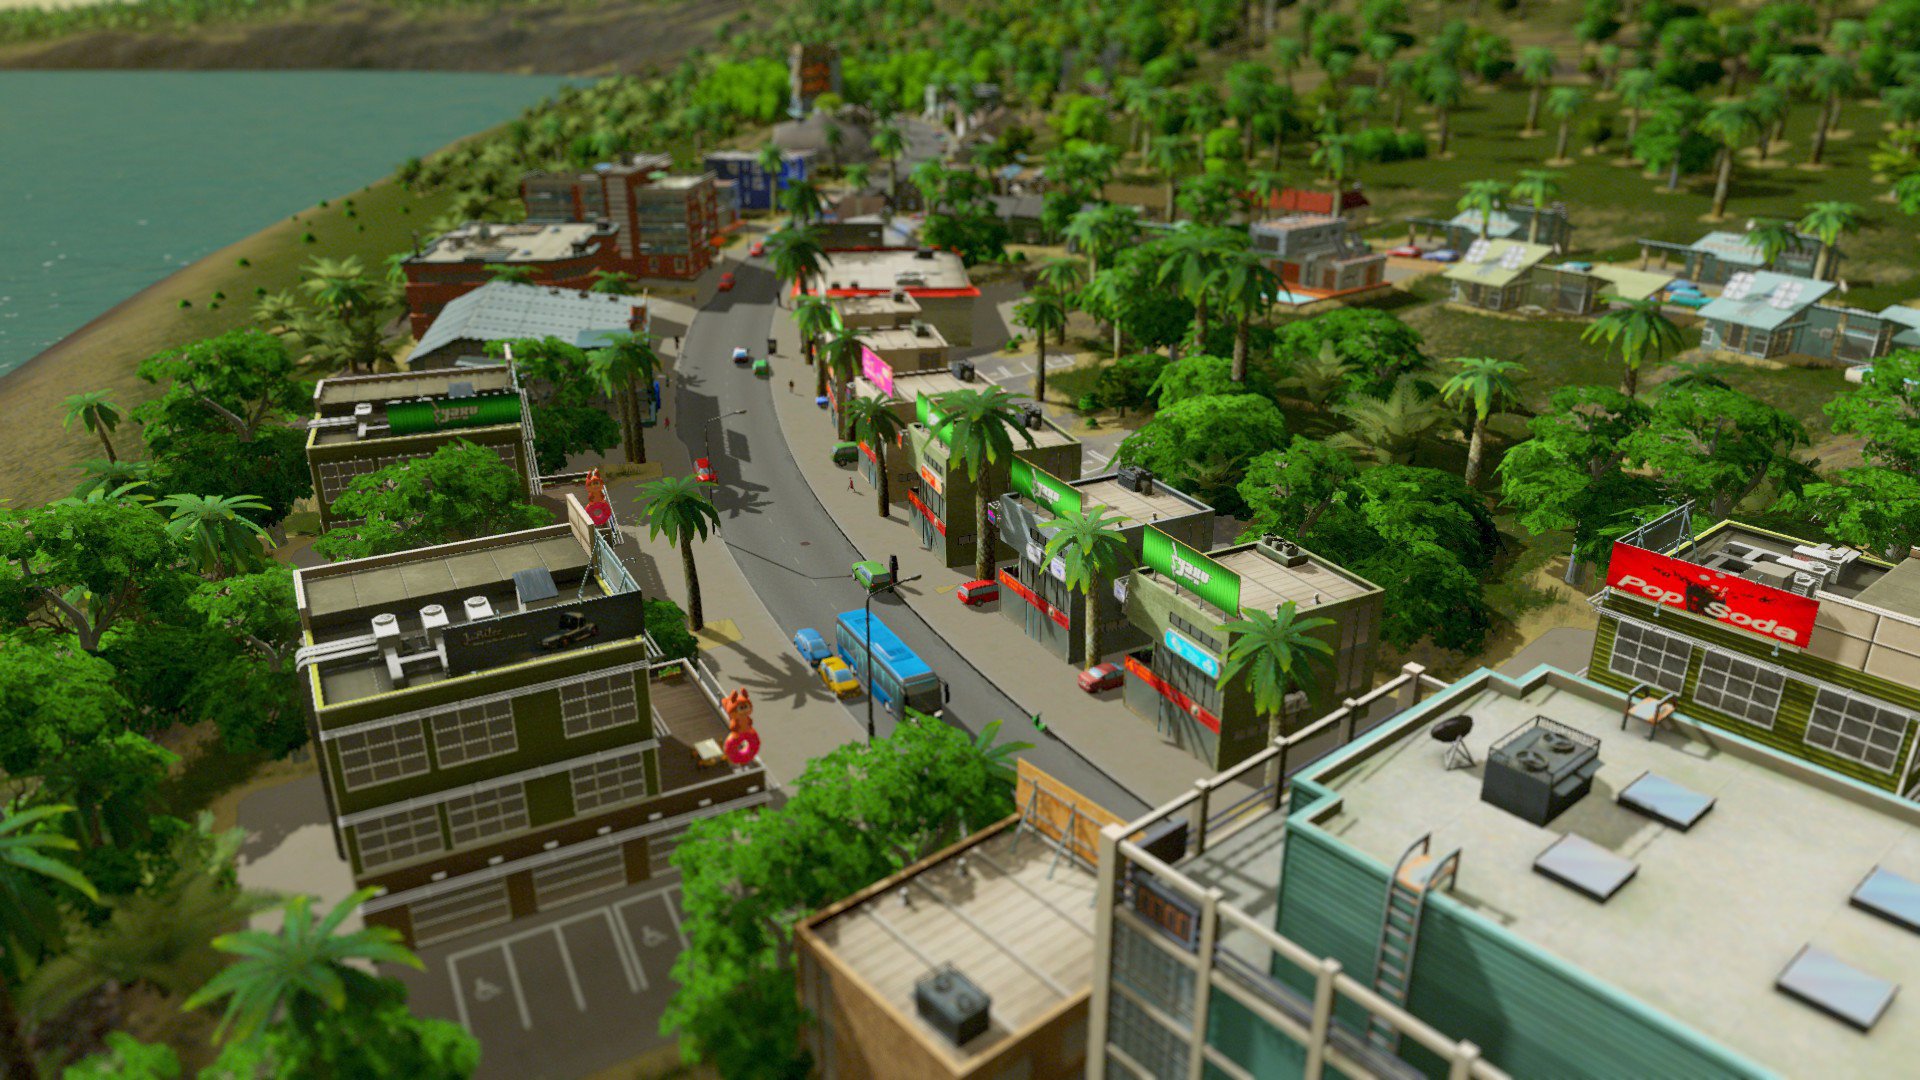 city skylines ps4 gamestop